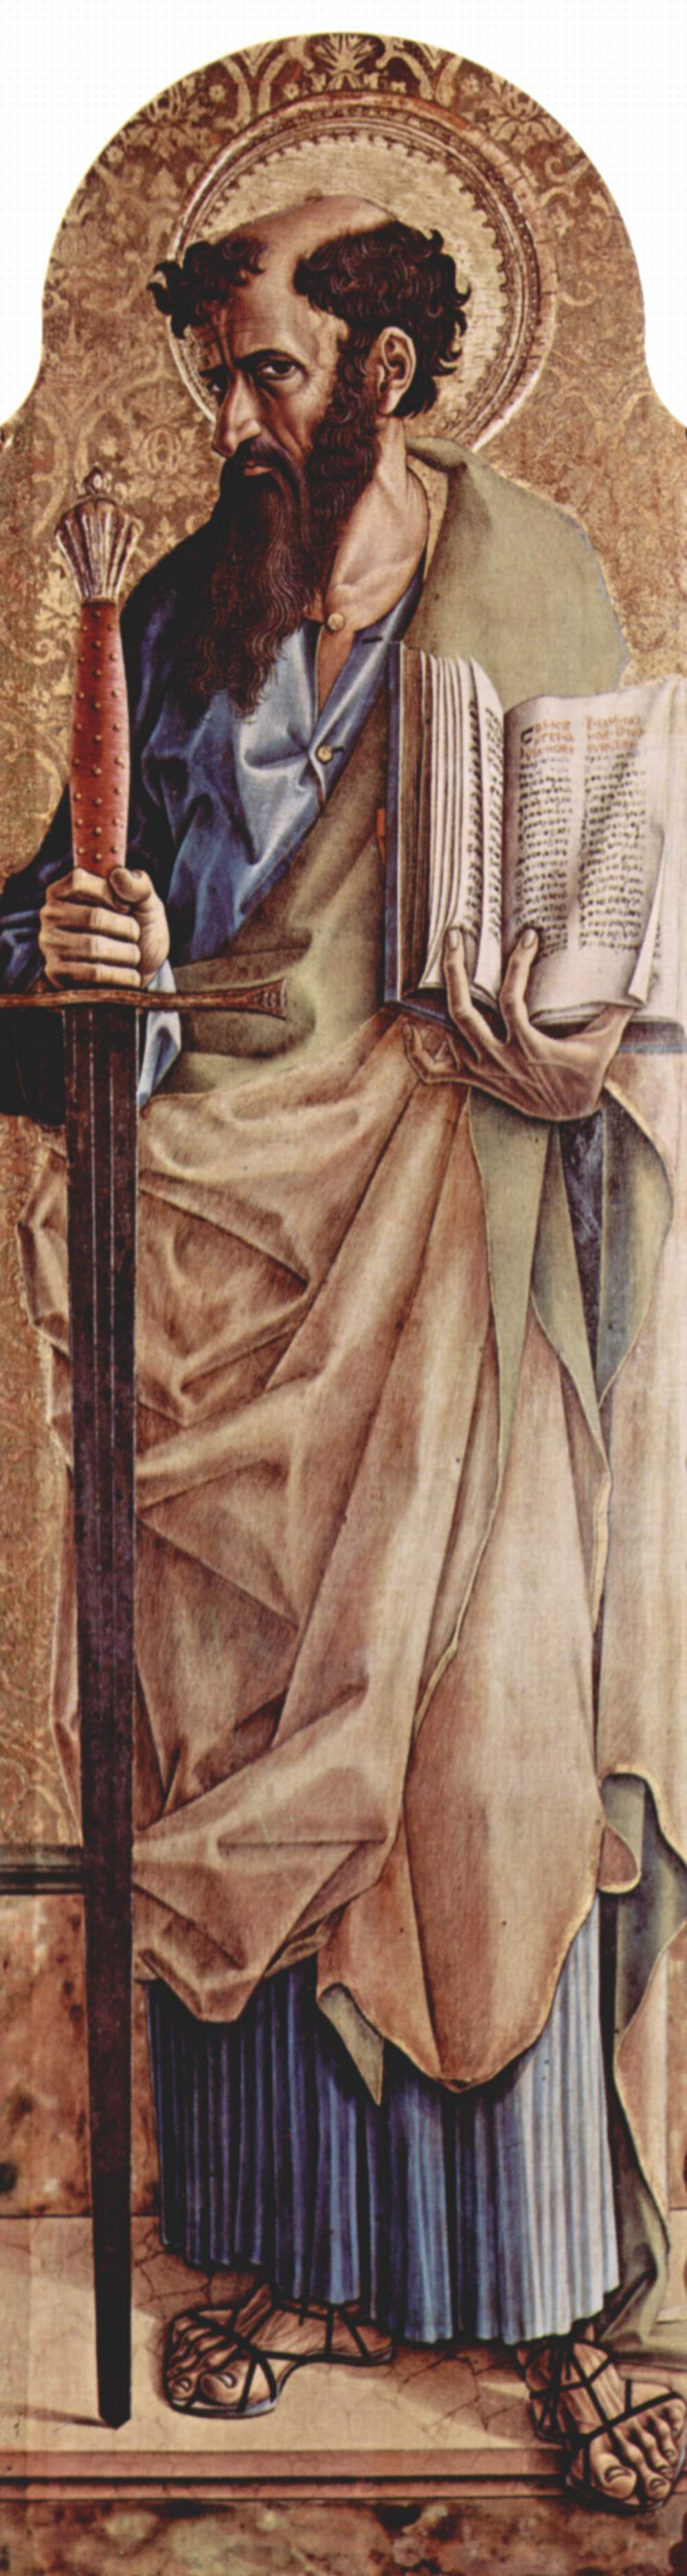 Карло Кривелли. Святой Павел. Центральный алтарь кафедрального собора в Асколи, полиптих, правая створка внешняя сторона